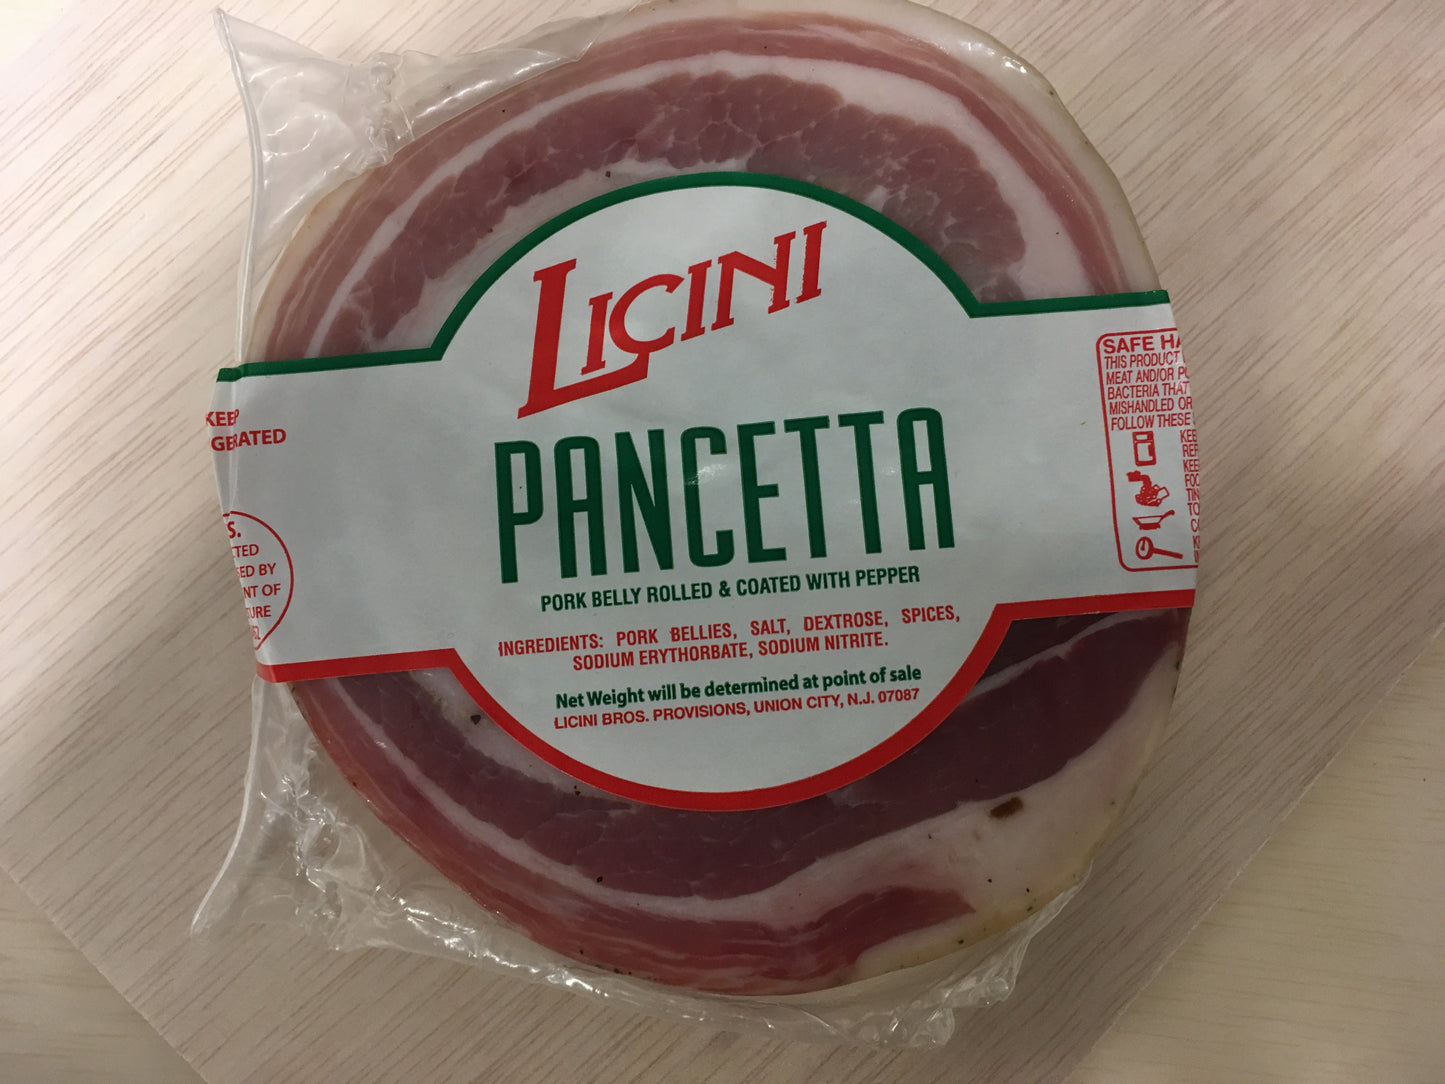 Licini Pancetta